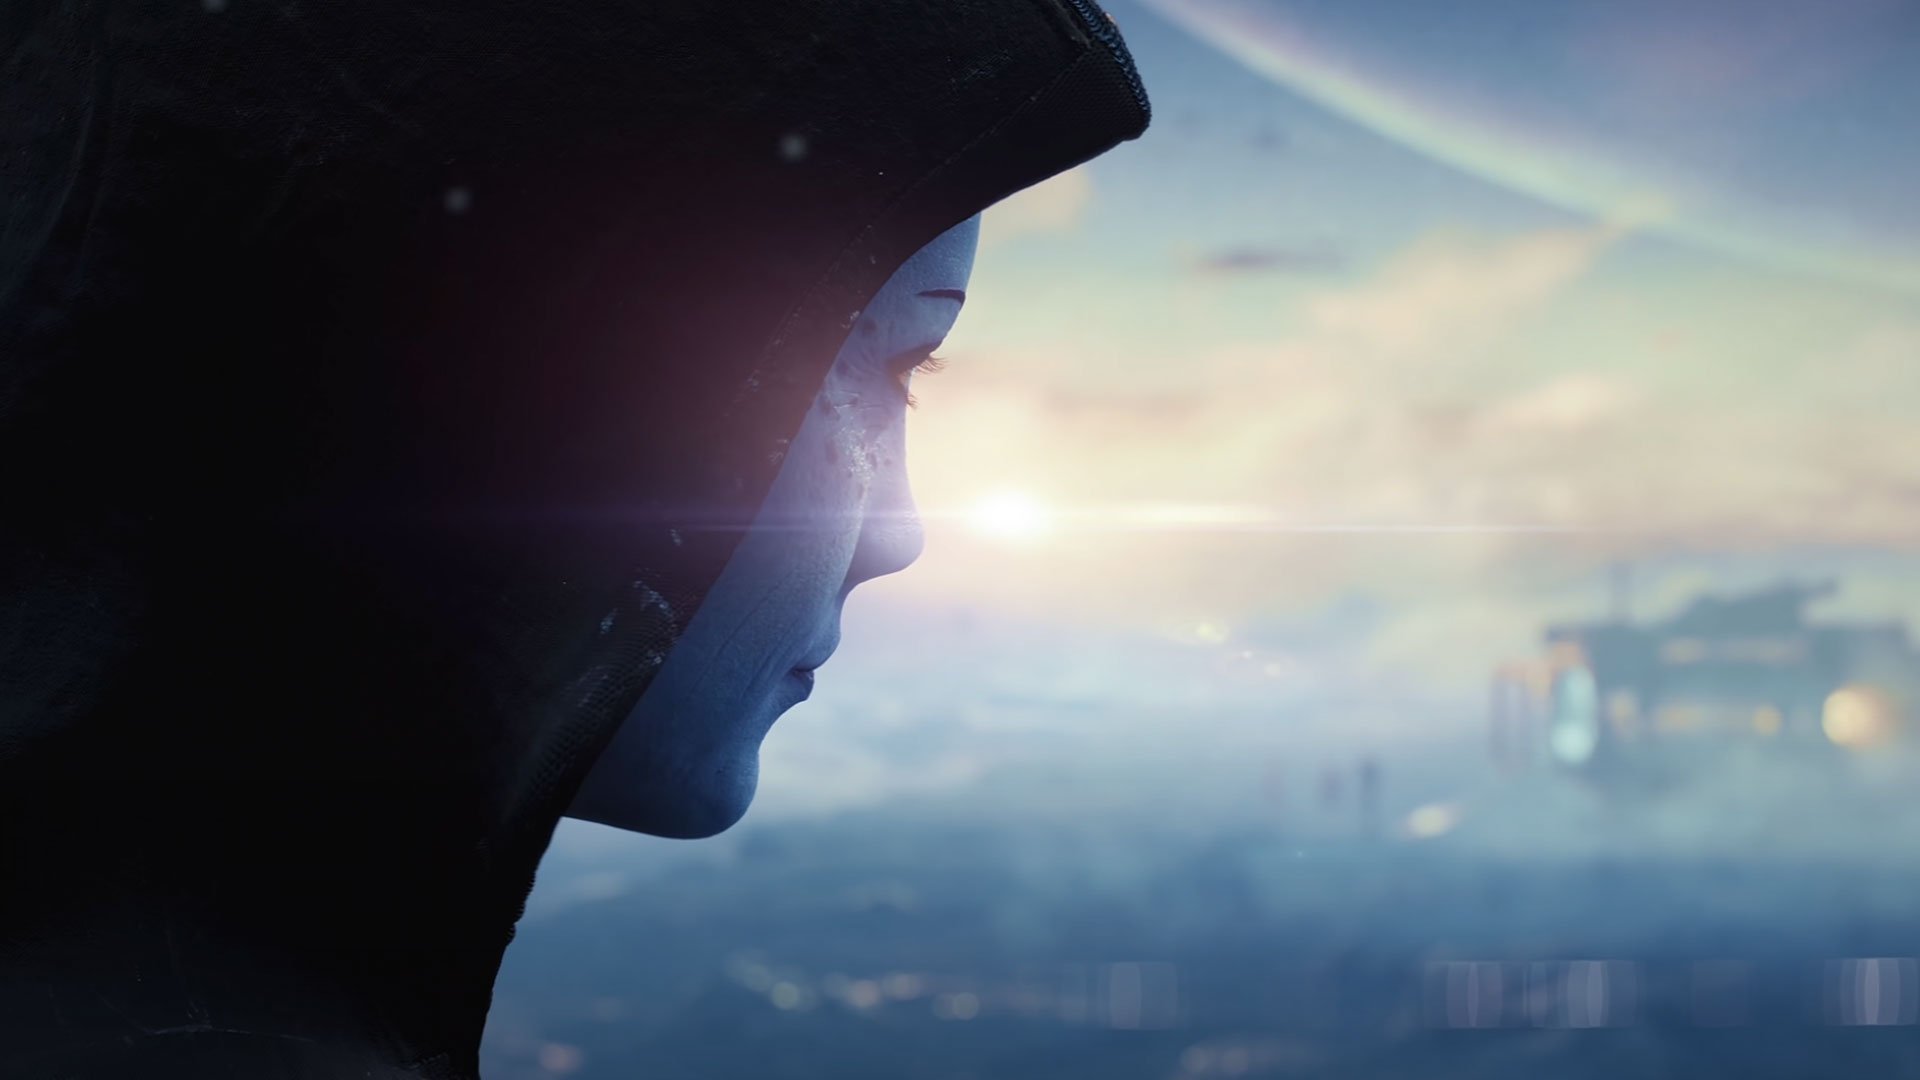 O que parece ser Liara aparece no primeiro teaser do próximo jogo Mass Effect